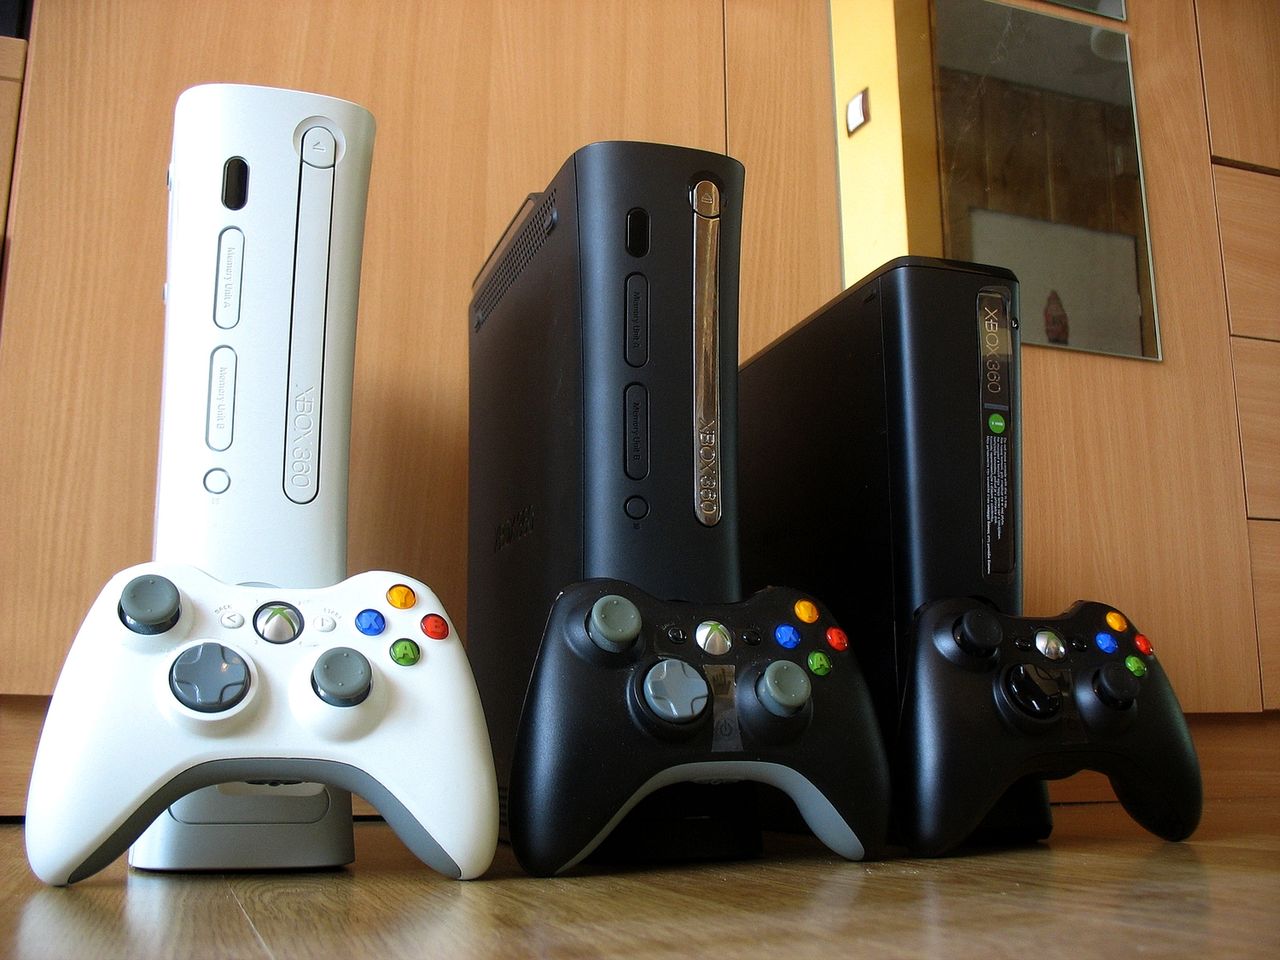 Ewolucja Xboxów [galeria]